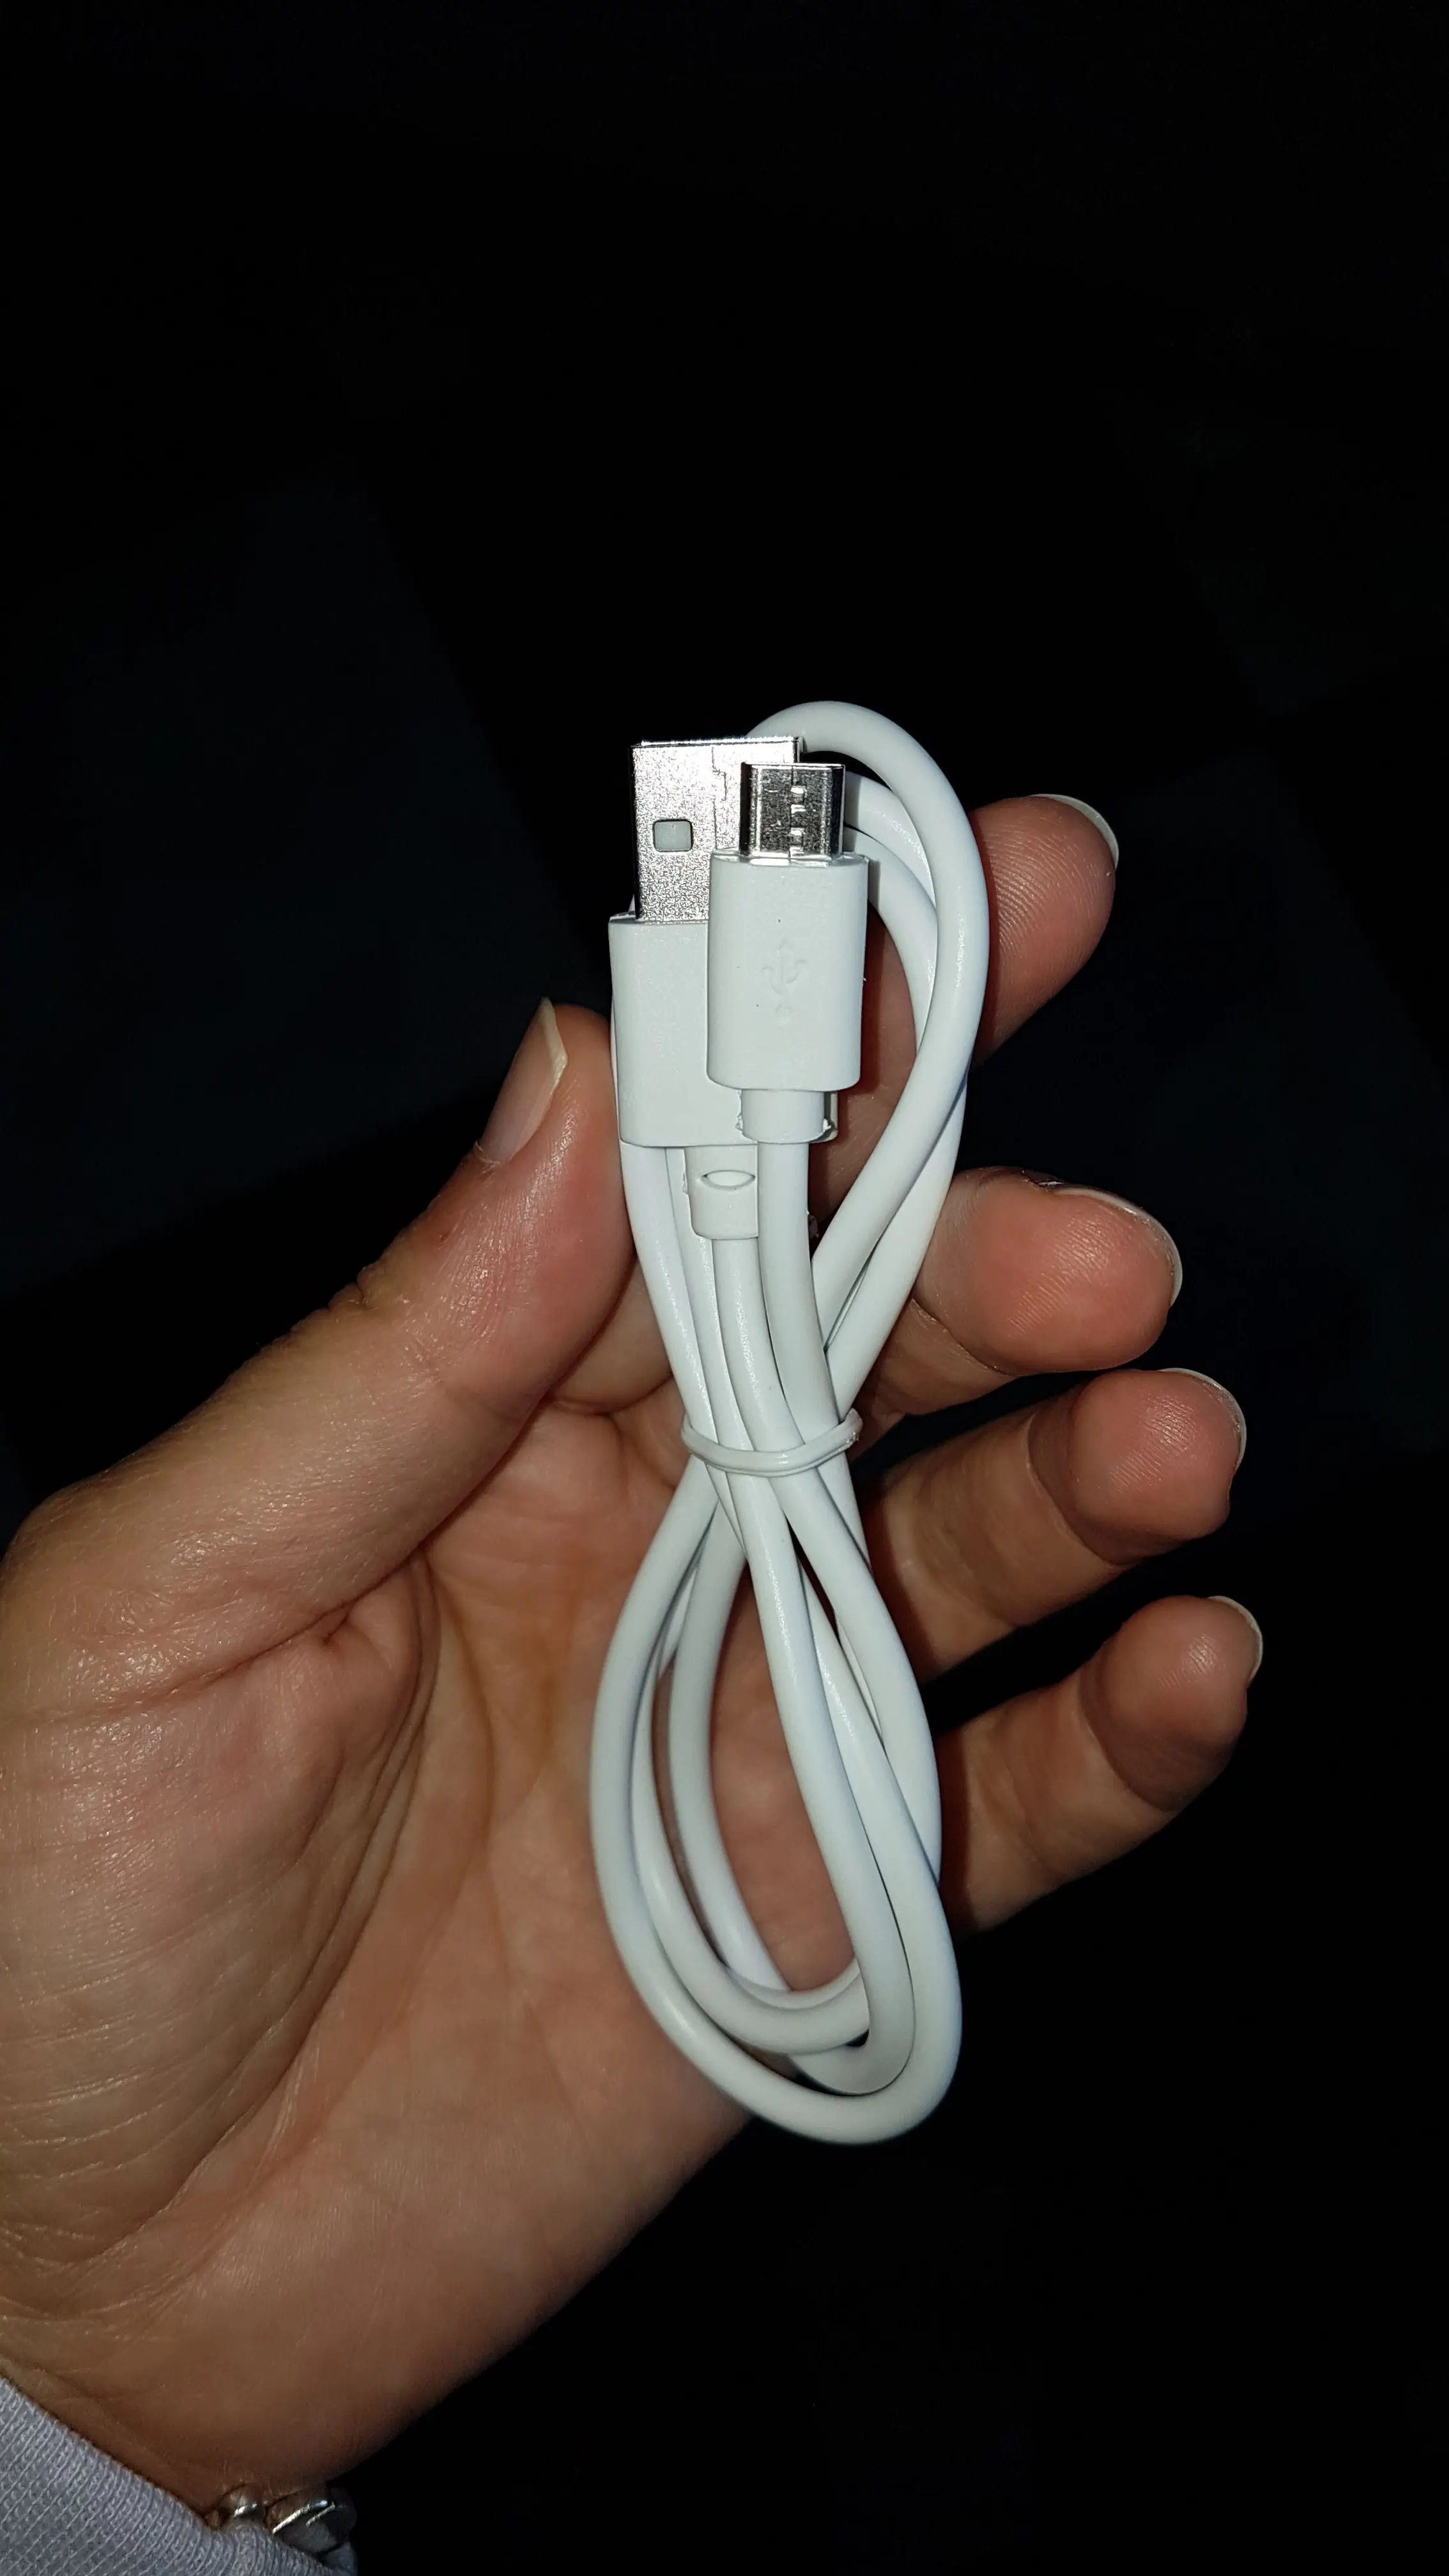 Cable MICRO USB Cargador para ANDROID HUAWEI SAMSUNG GALAXY LG SONY XPERIA 1 M Carga Rapida Envio Desde España